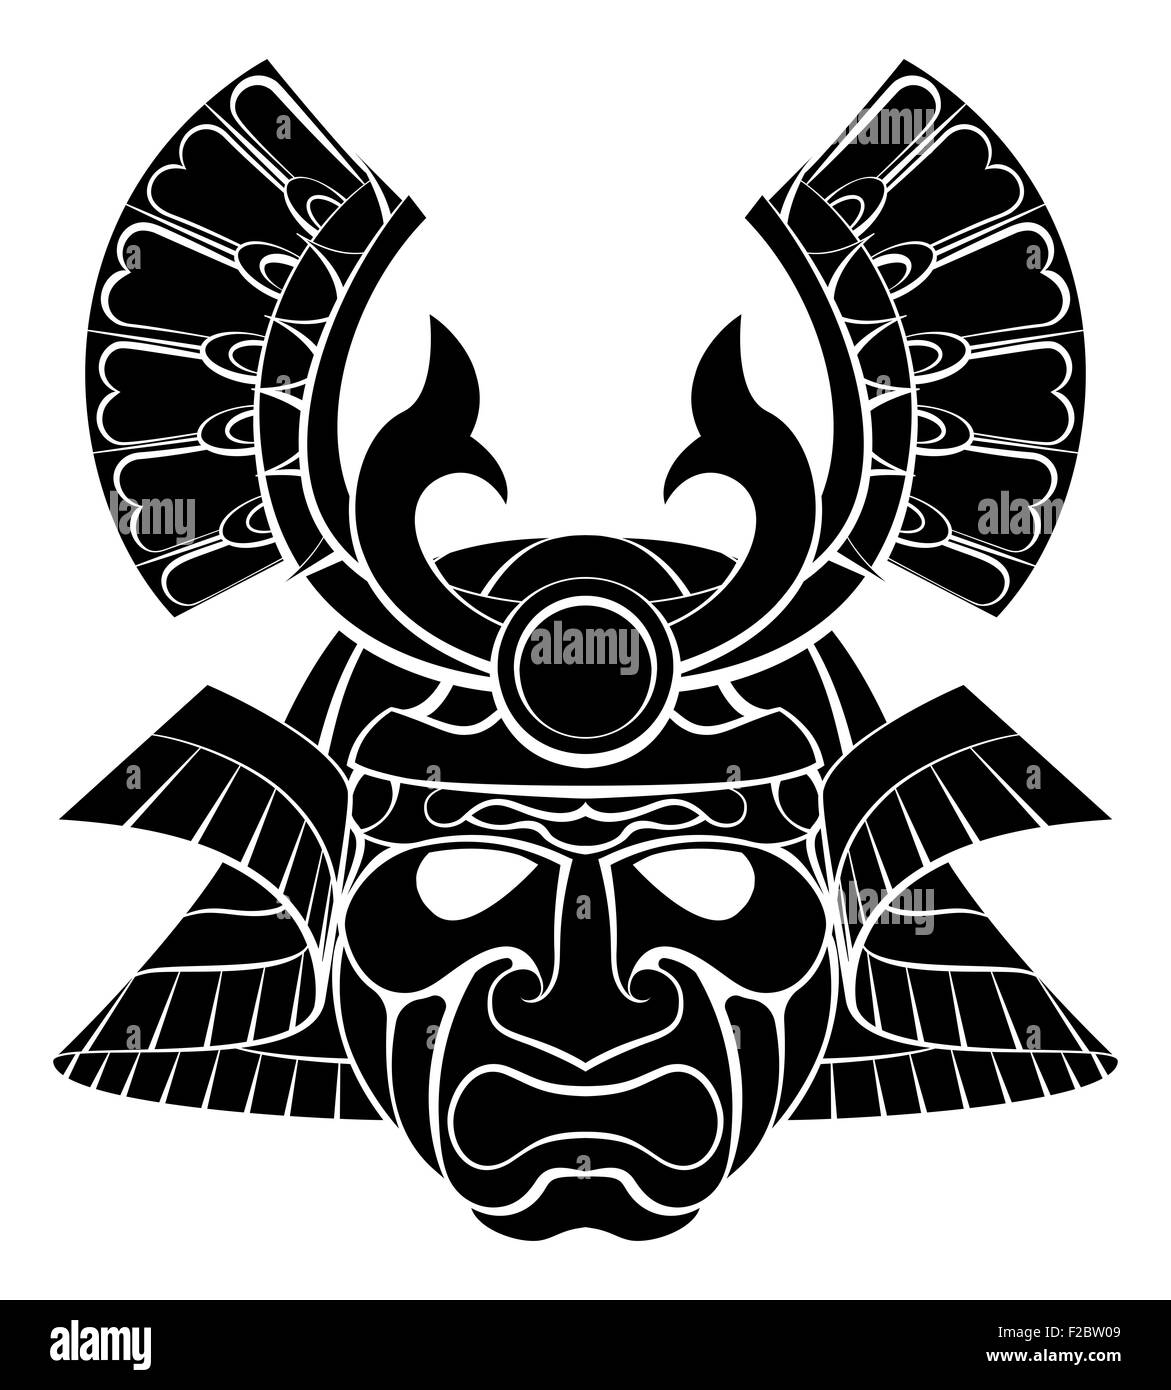 Un casque masque de guerrier samouraï design graphic illustration Banque D'Images